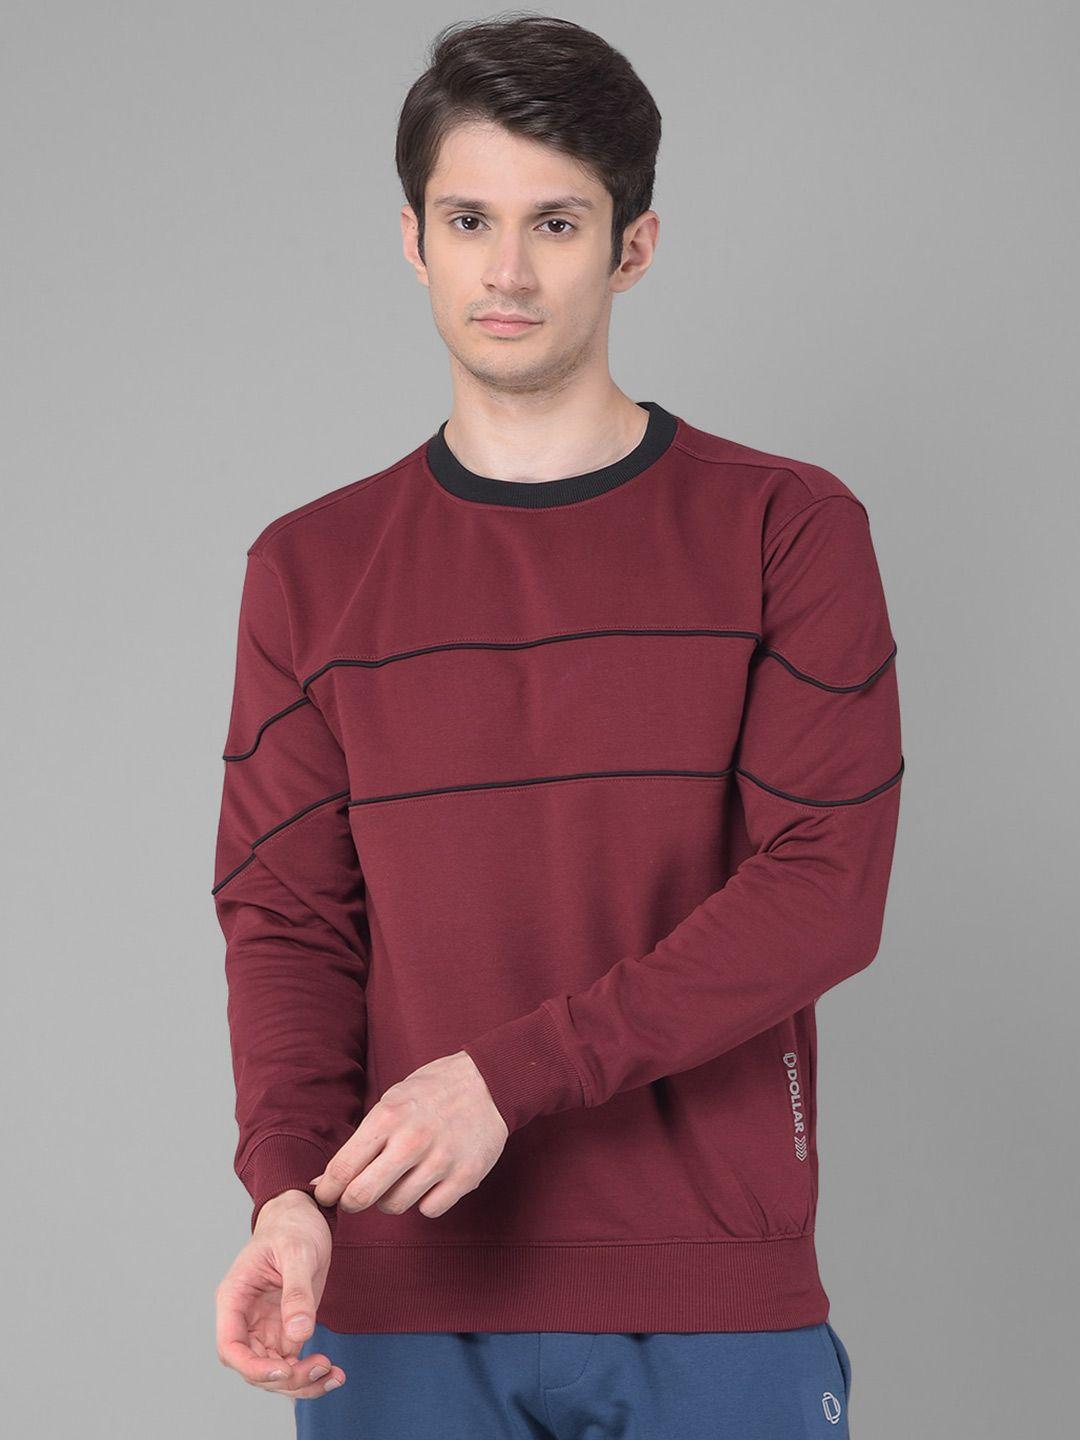 dollar-striped-round-neck-cotton-sweatshirt